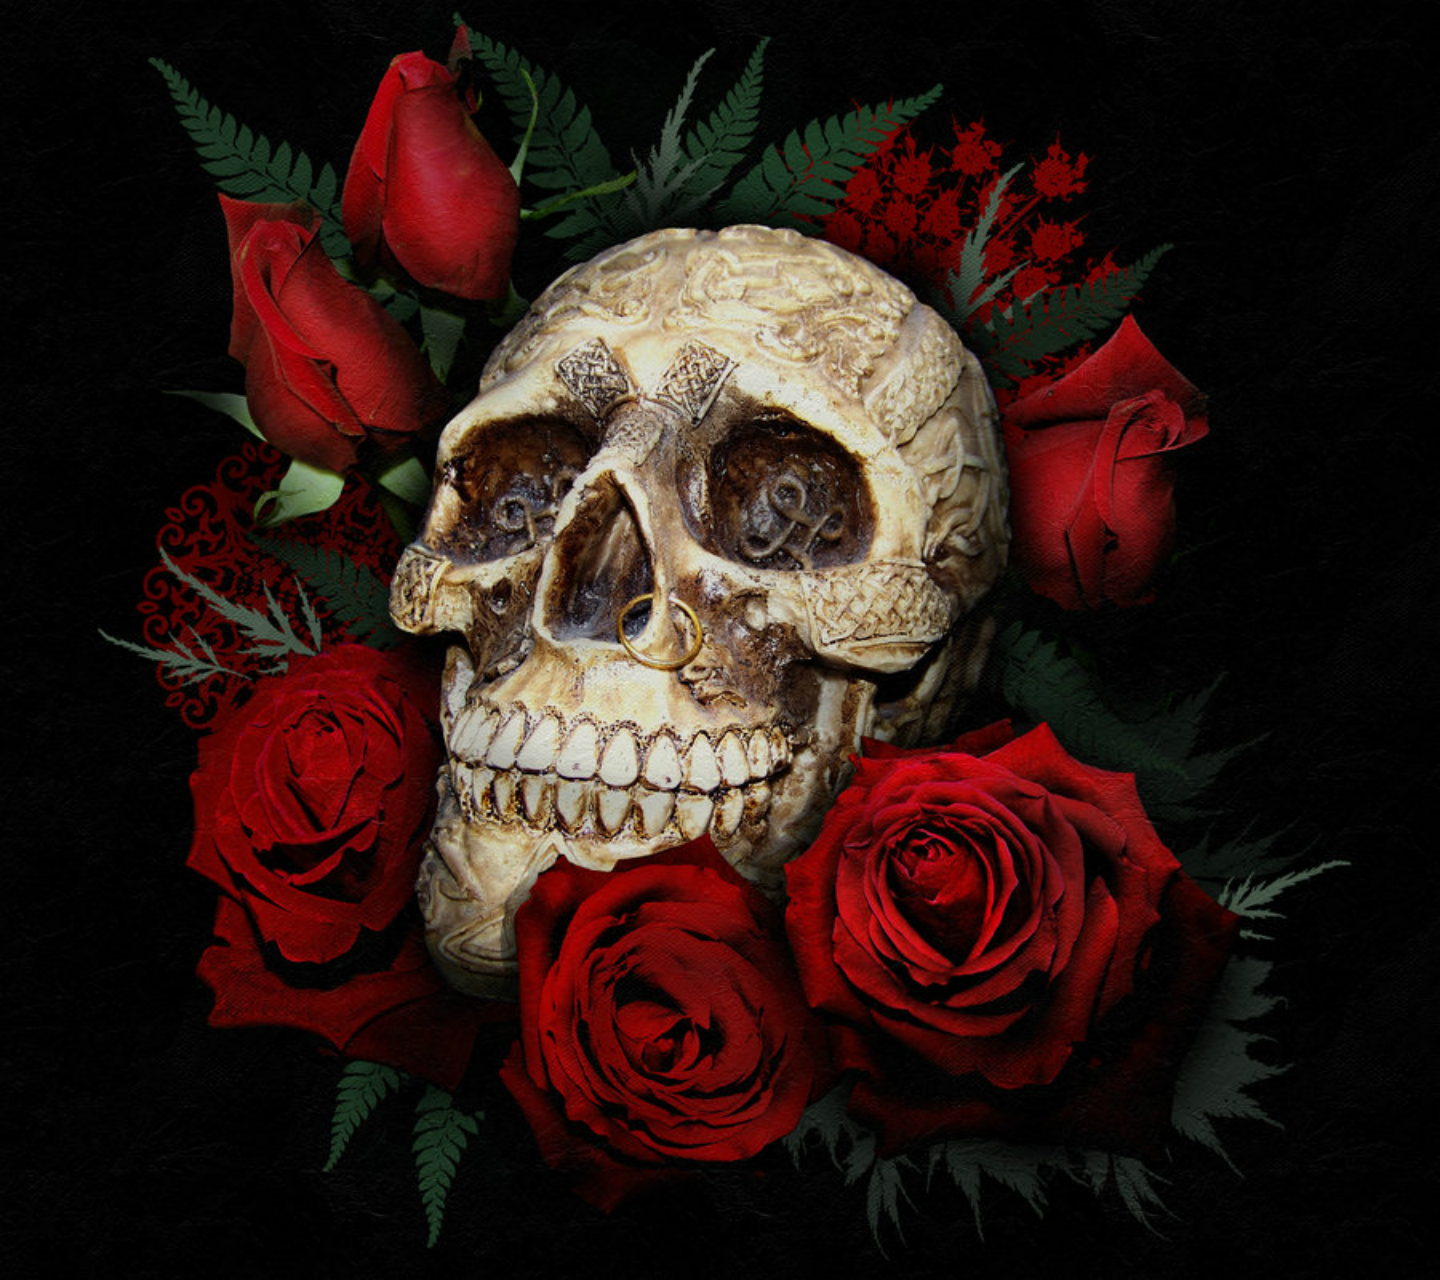 http://3.bp.blogspot.com/-XWvQKs87imA/UZDb8w5N3zI/AAAAAAAAPmQ/EFBU9FYGIZs/s1600/Skull_and_red_roses_by_SerenityNme.jpg